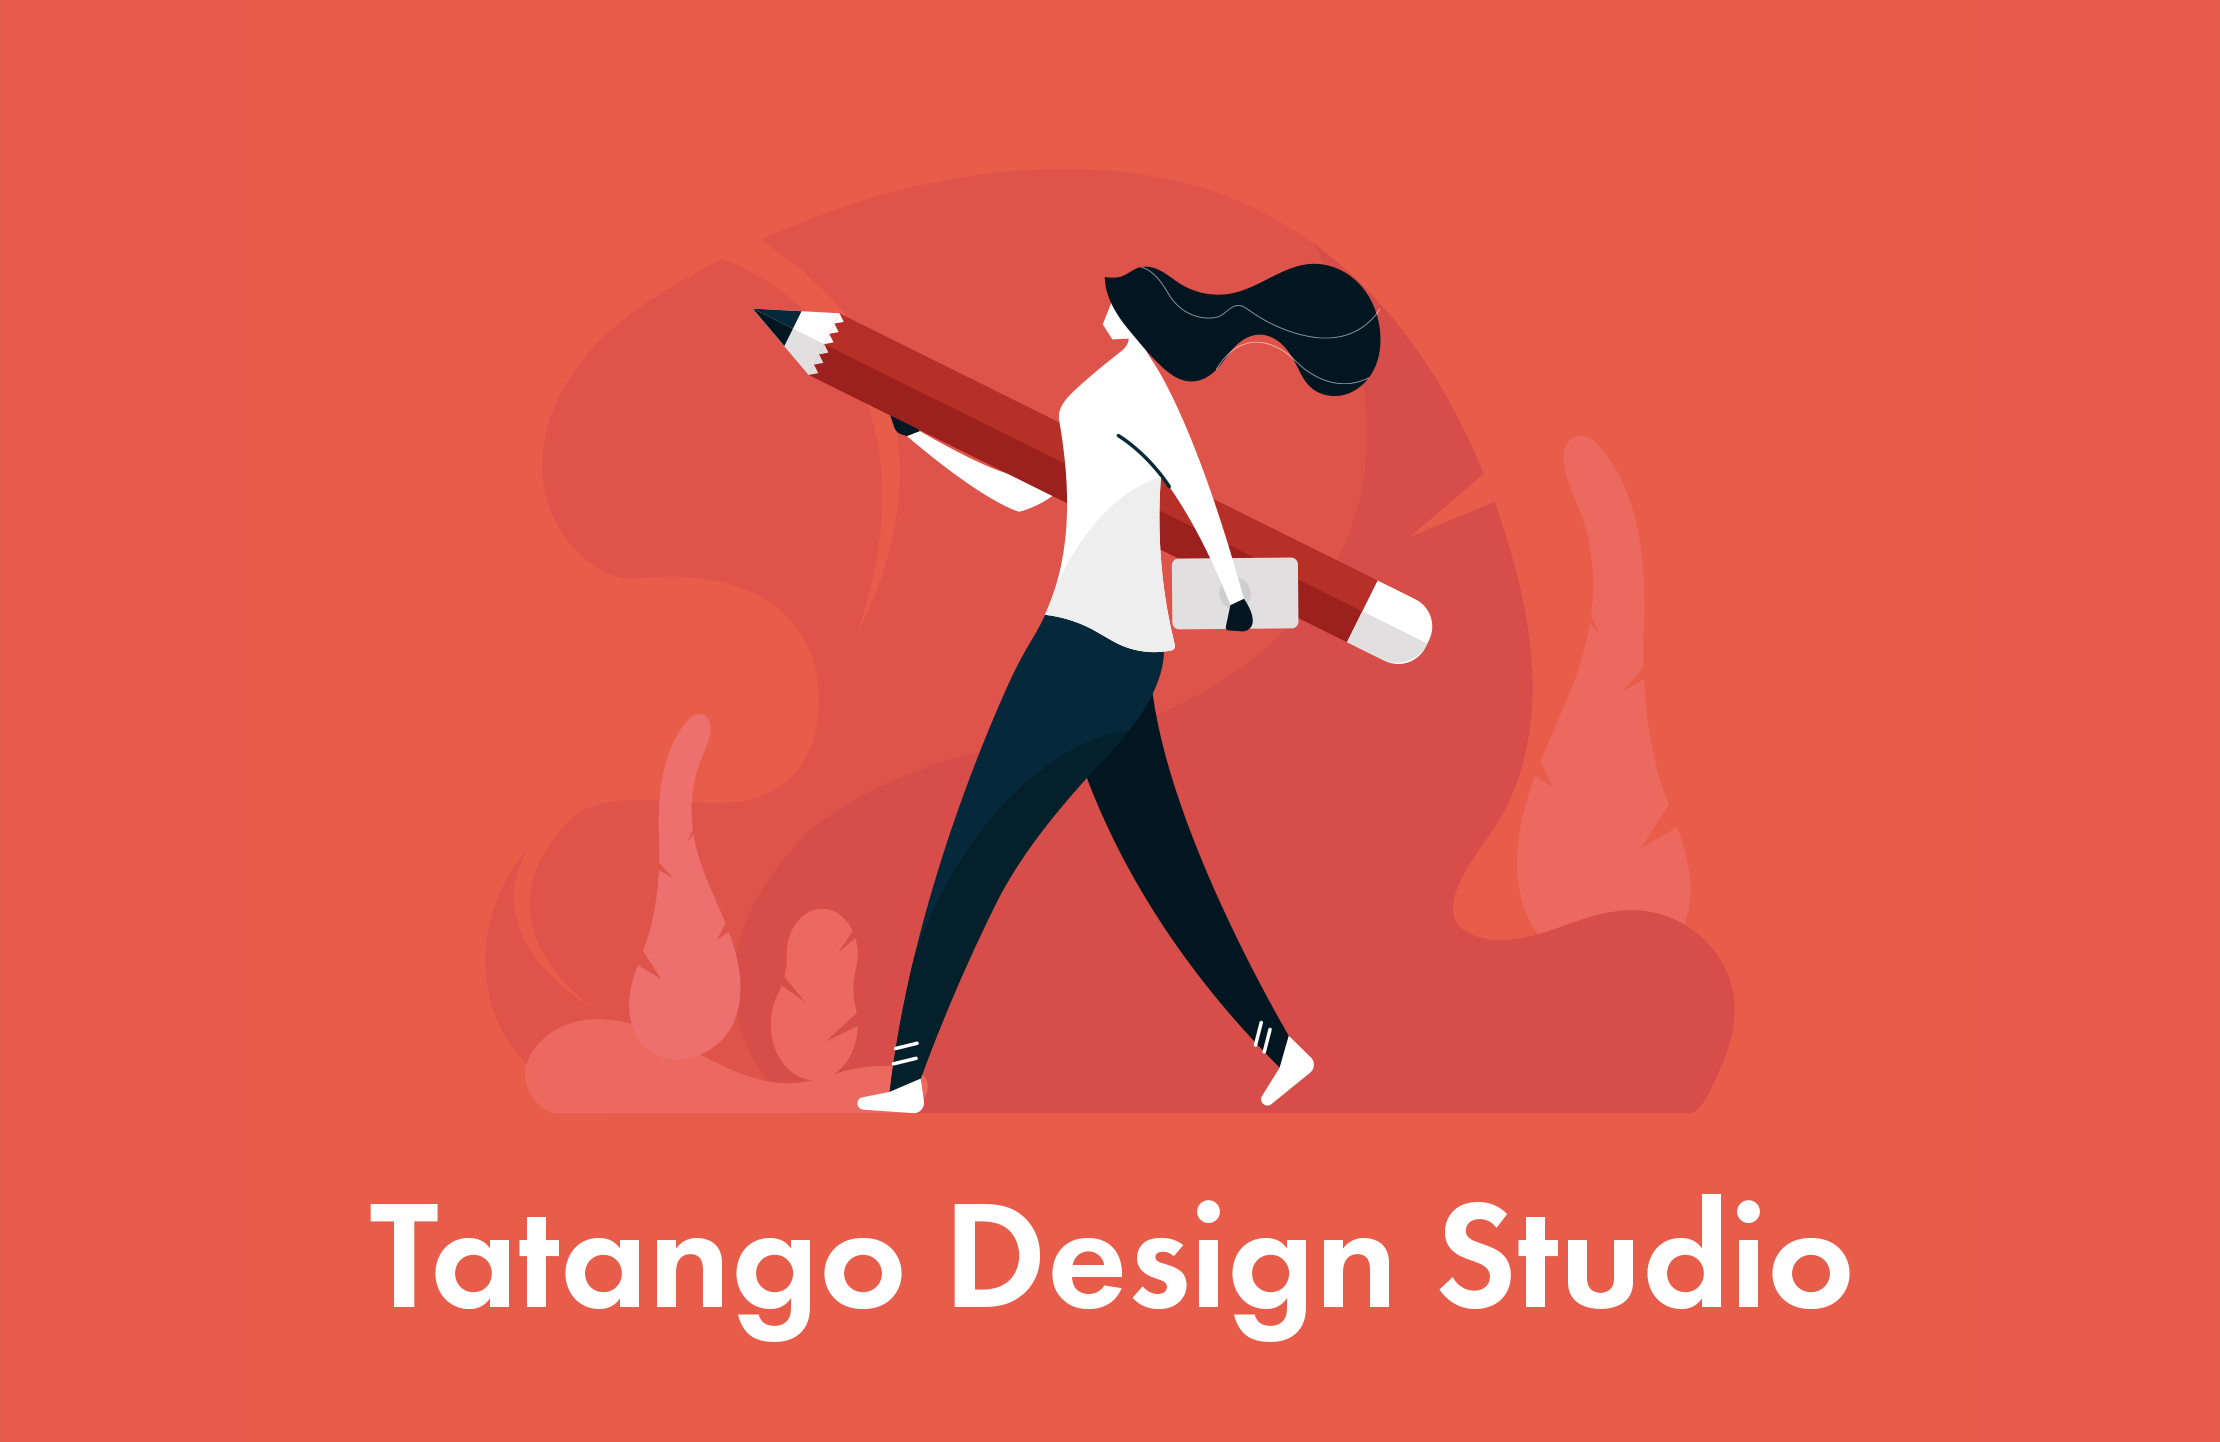 Tatango Design Studio